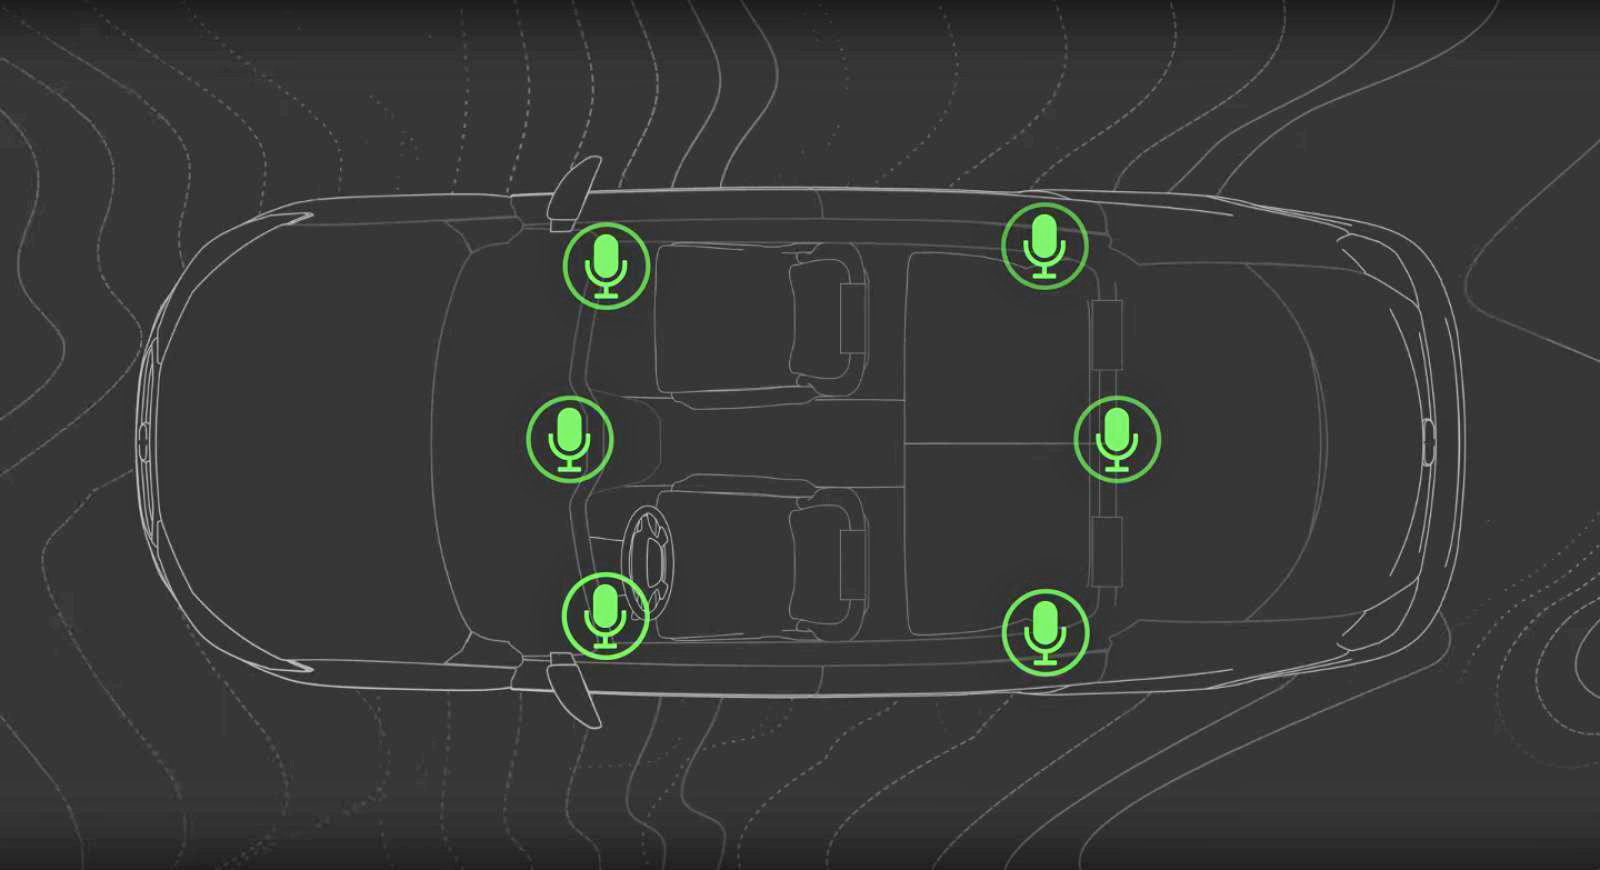 Bose aracın dışından gelen gürültüleri engelleyecek